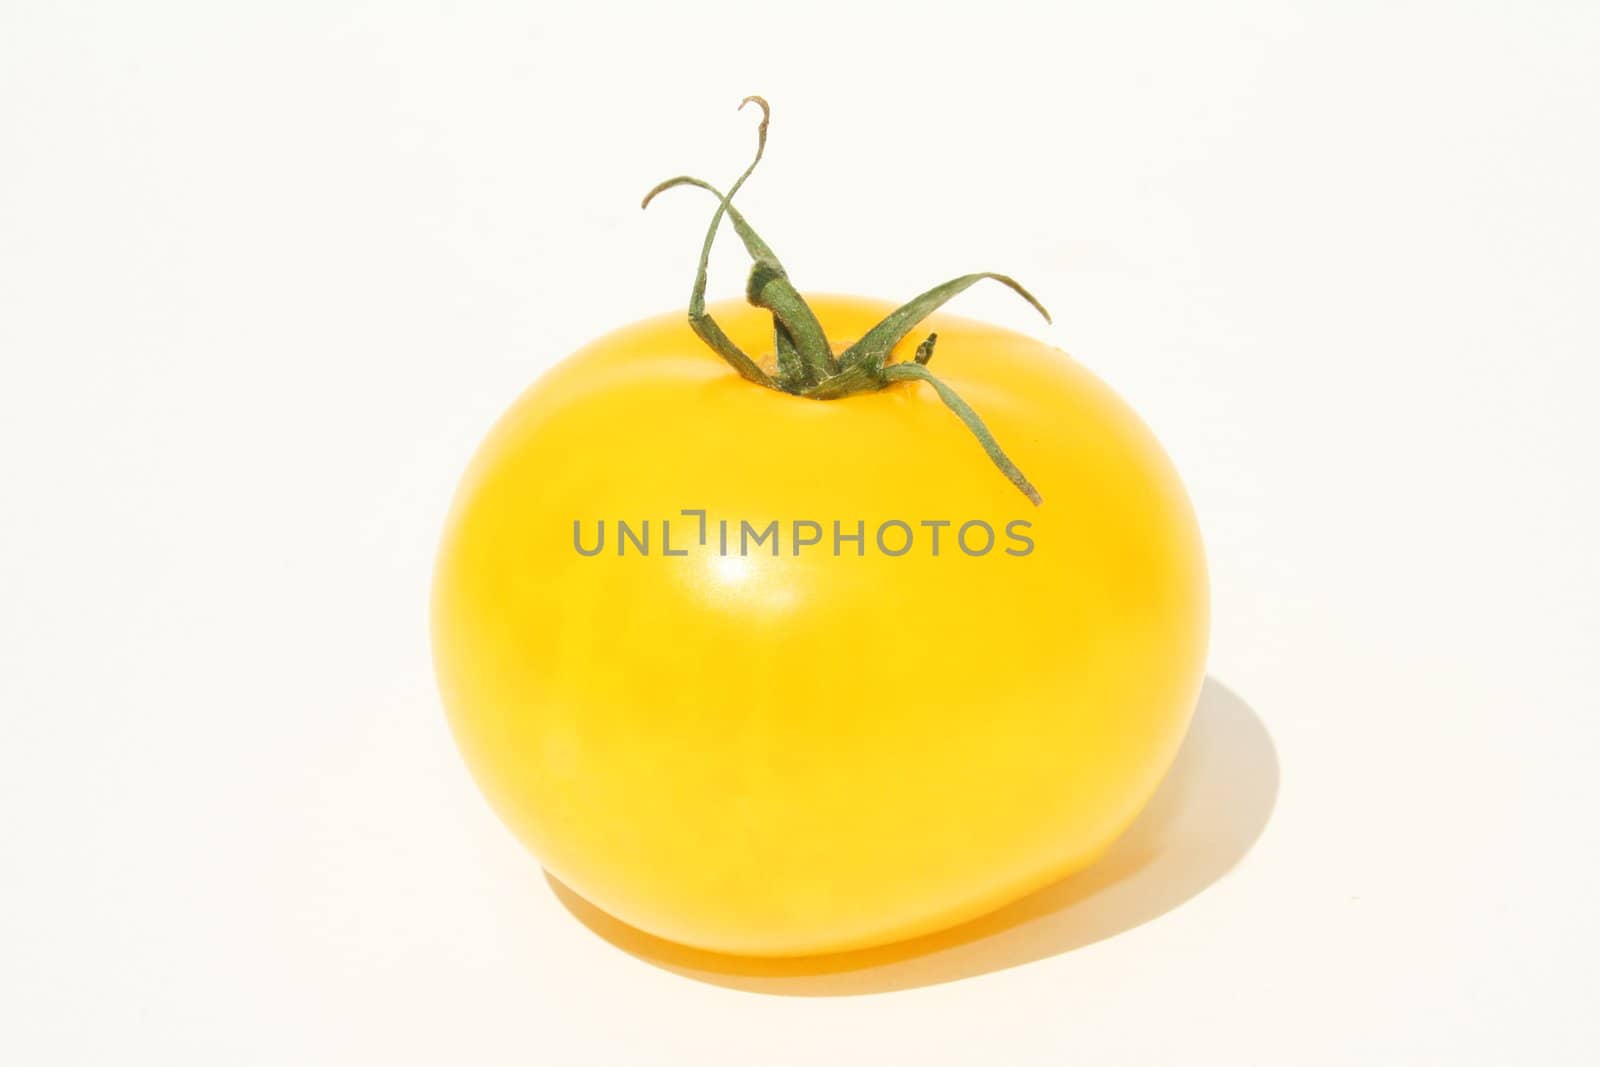 Single yellow tomato on white background